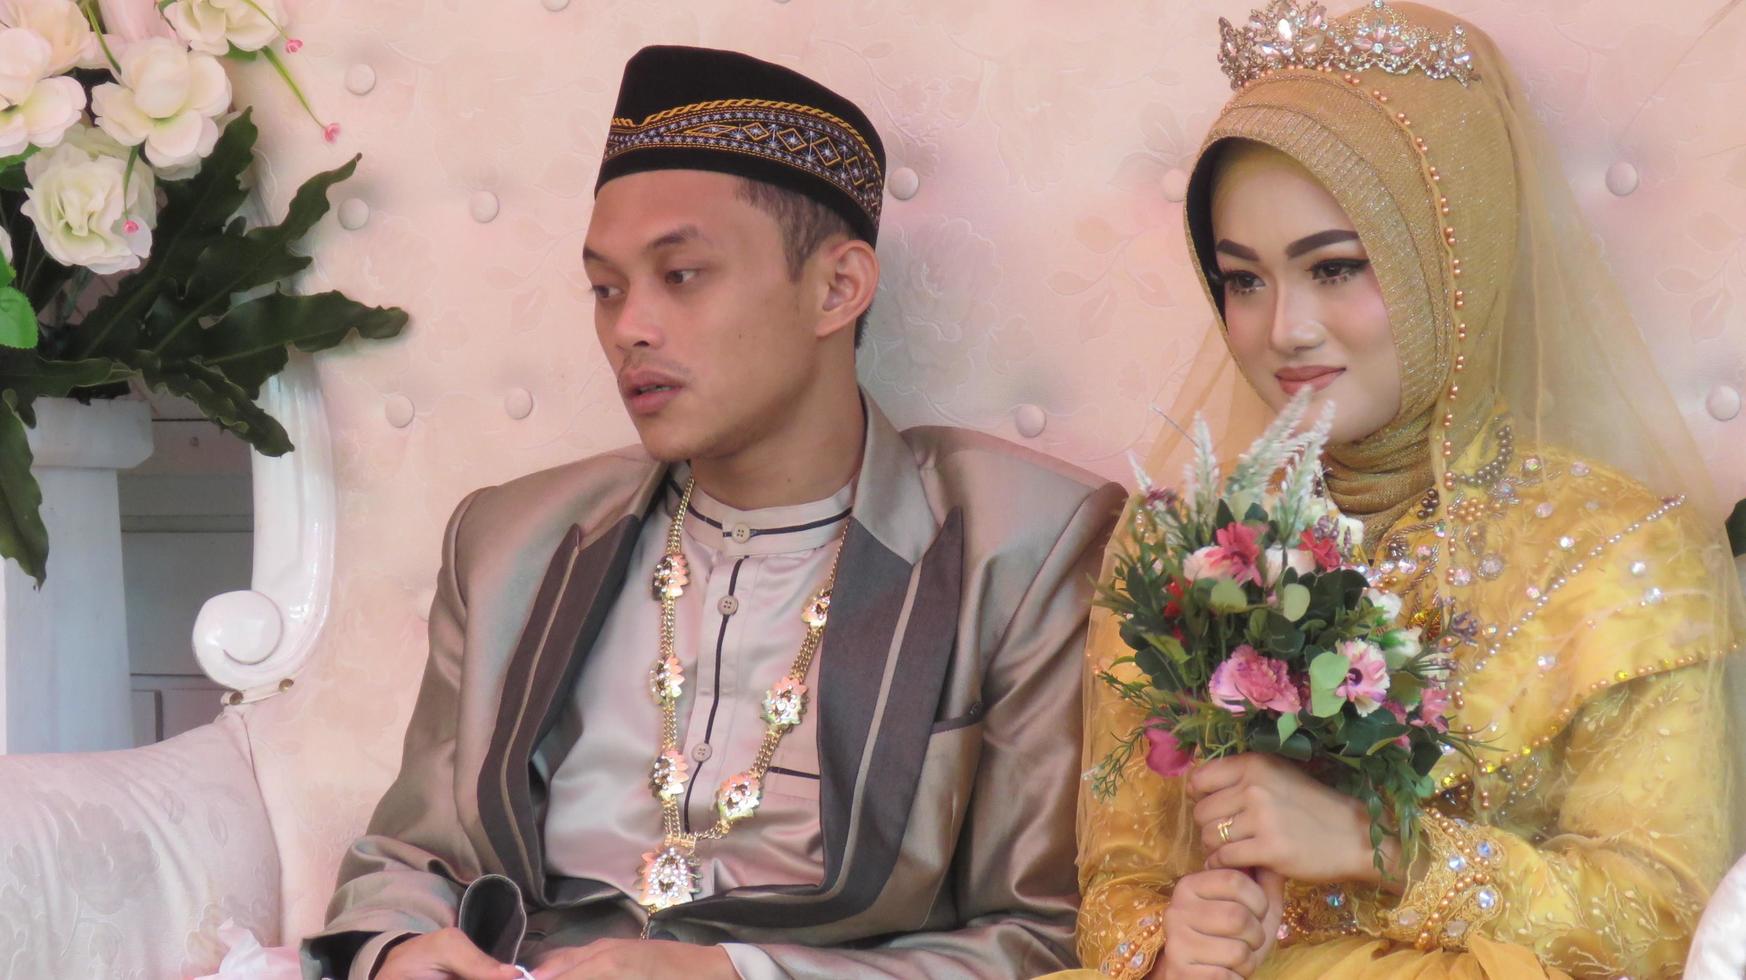 cianjur regency java occidental indonesia el 15 de junio de 2021 - una pareja feliz. boda musulmana indonesia. foto